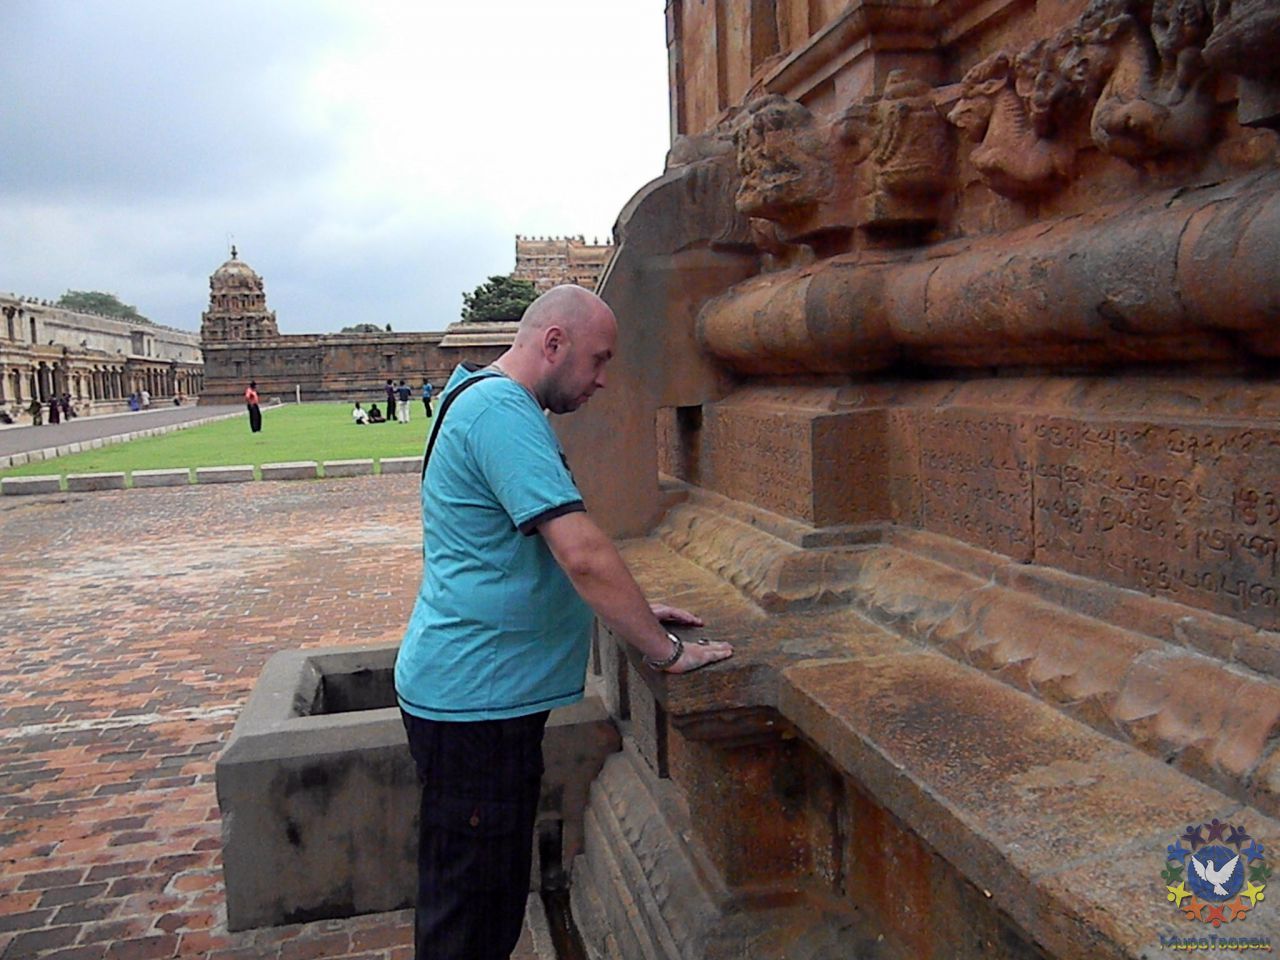 Соединение с символами, древней письменностью на стене, расшифровать которую гиды не смогли - группа в Индии, ноябрь 2011, часть 3 (стихия Воды)